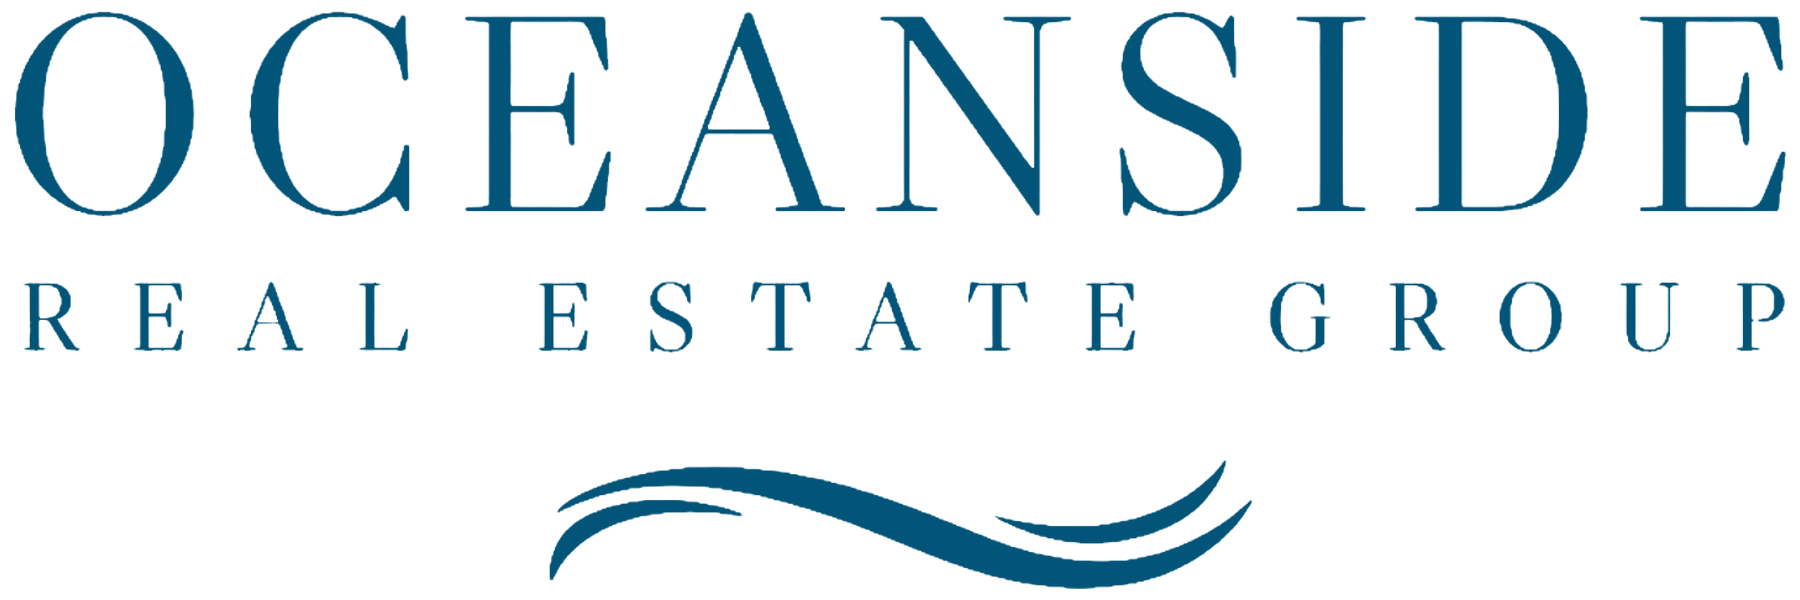 Oceanside blue logo